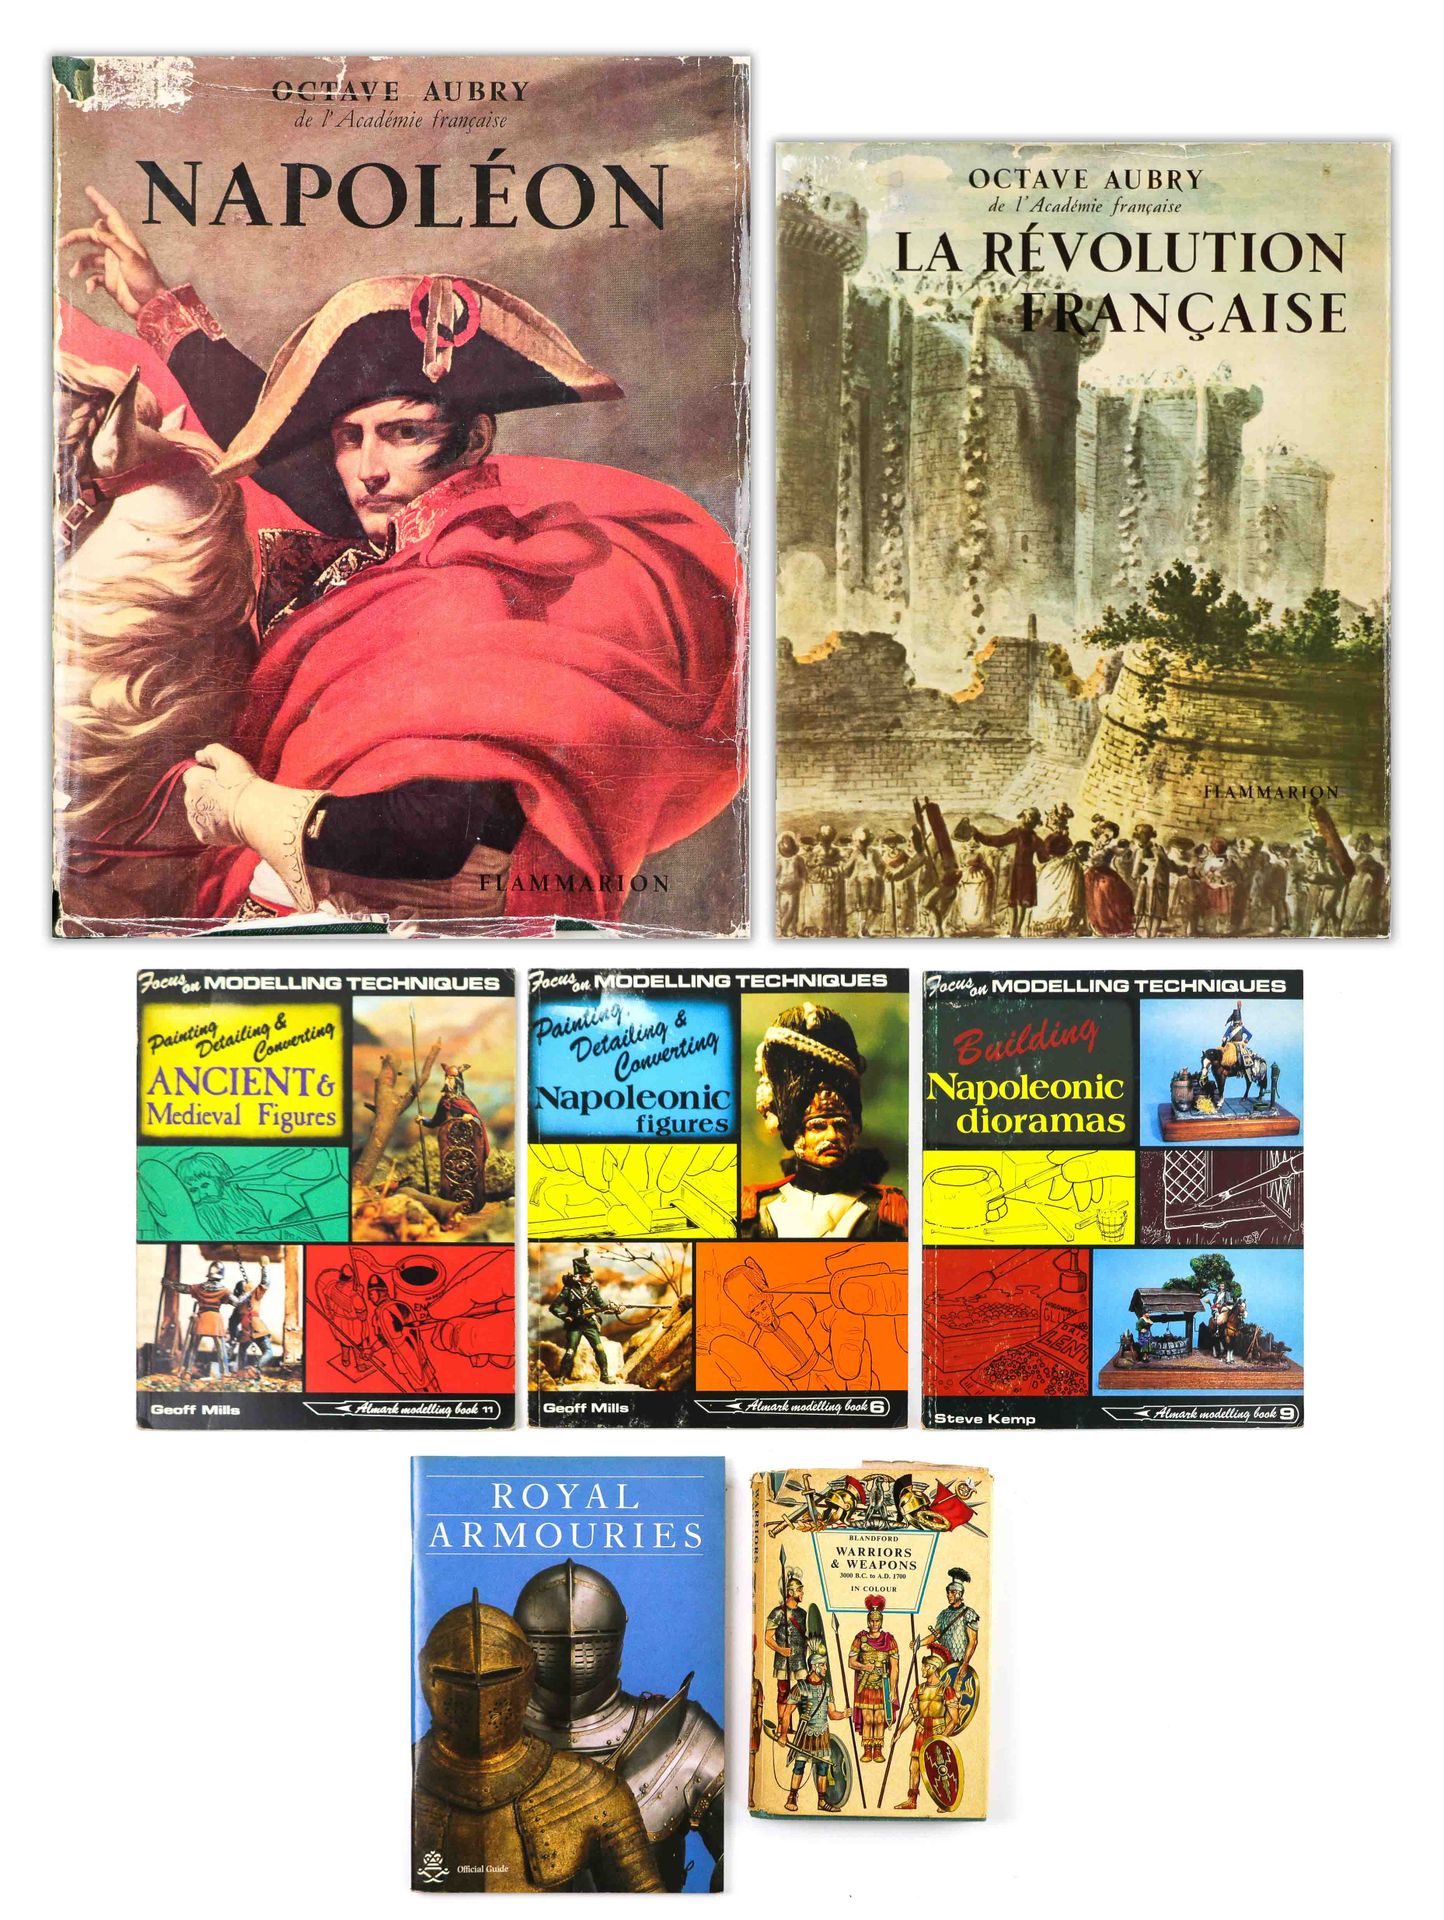 Null Posten von acht gebundenen Bänden, darunter:

"Die Französische Revolution"&hellip;